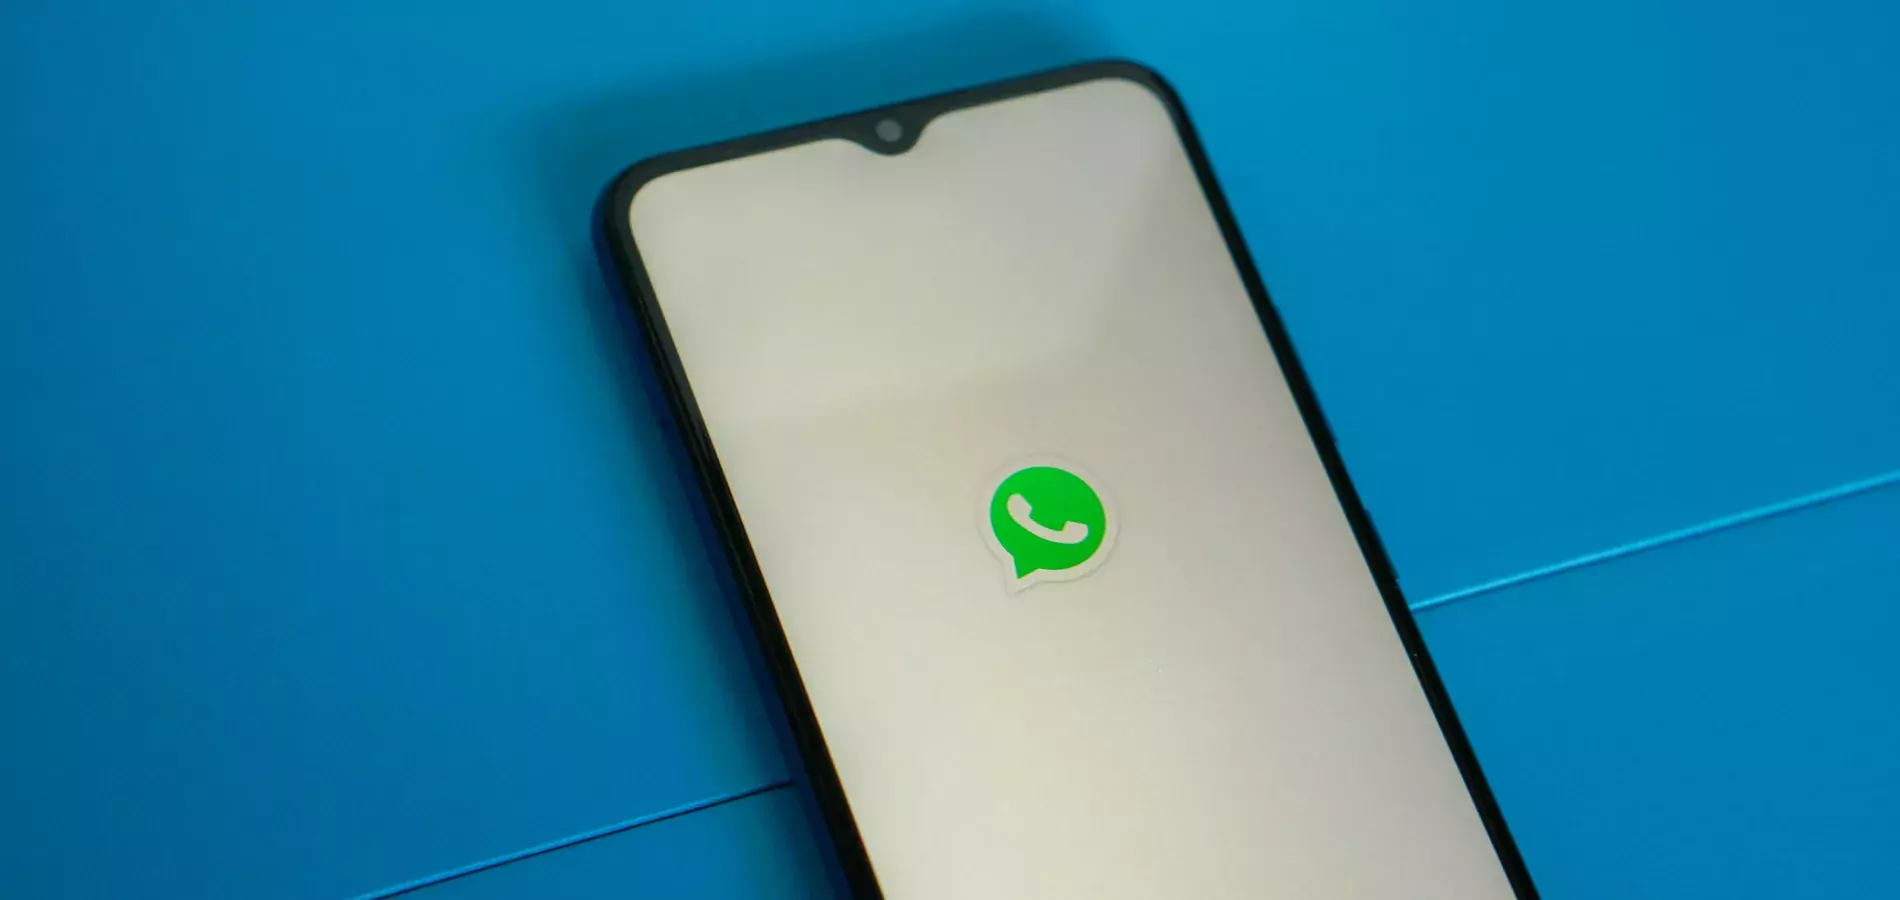 WhatsApp тестирует функцию расшифровки голосовых сообщений на Android-устройствах